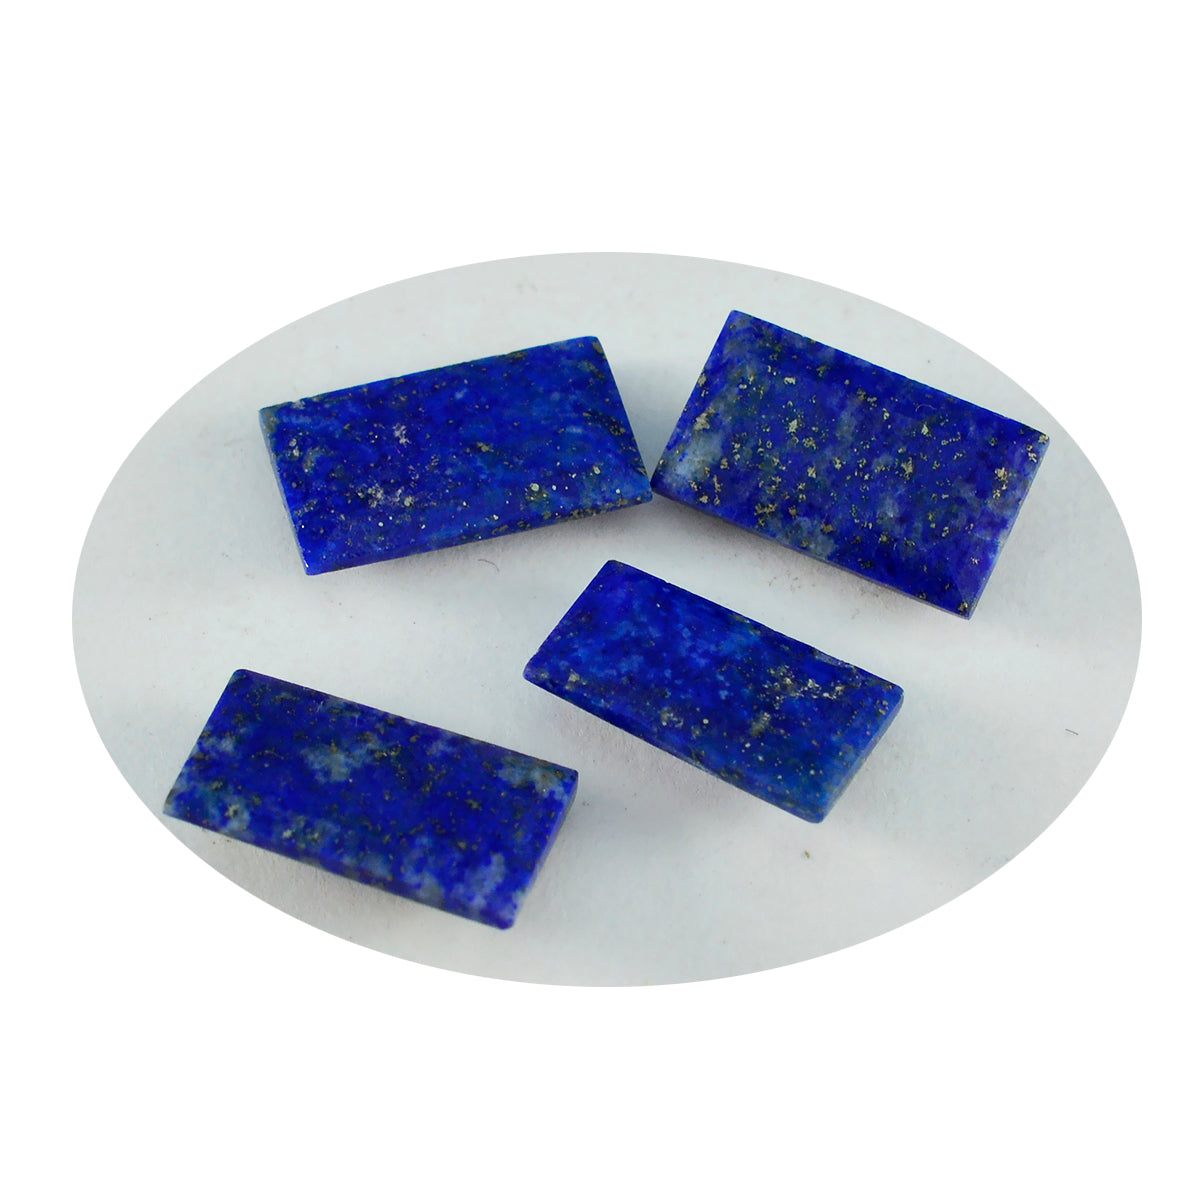 riyogems 1 шт. натуральный синий лазурит ограненный 5x10 мм в форме багета драгоценный камень фантастического качества